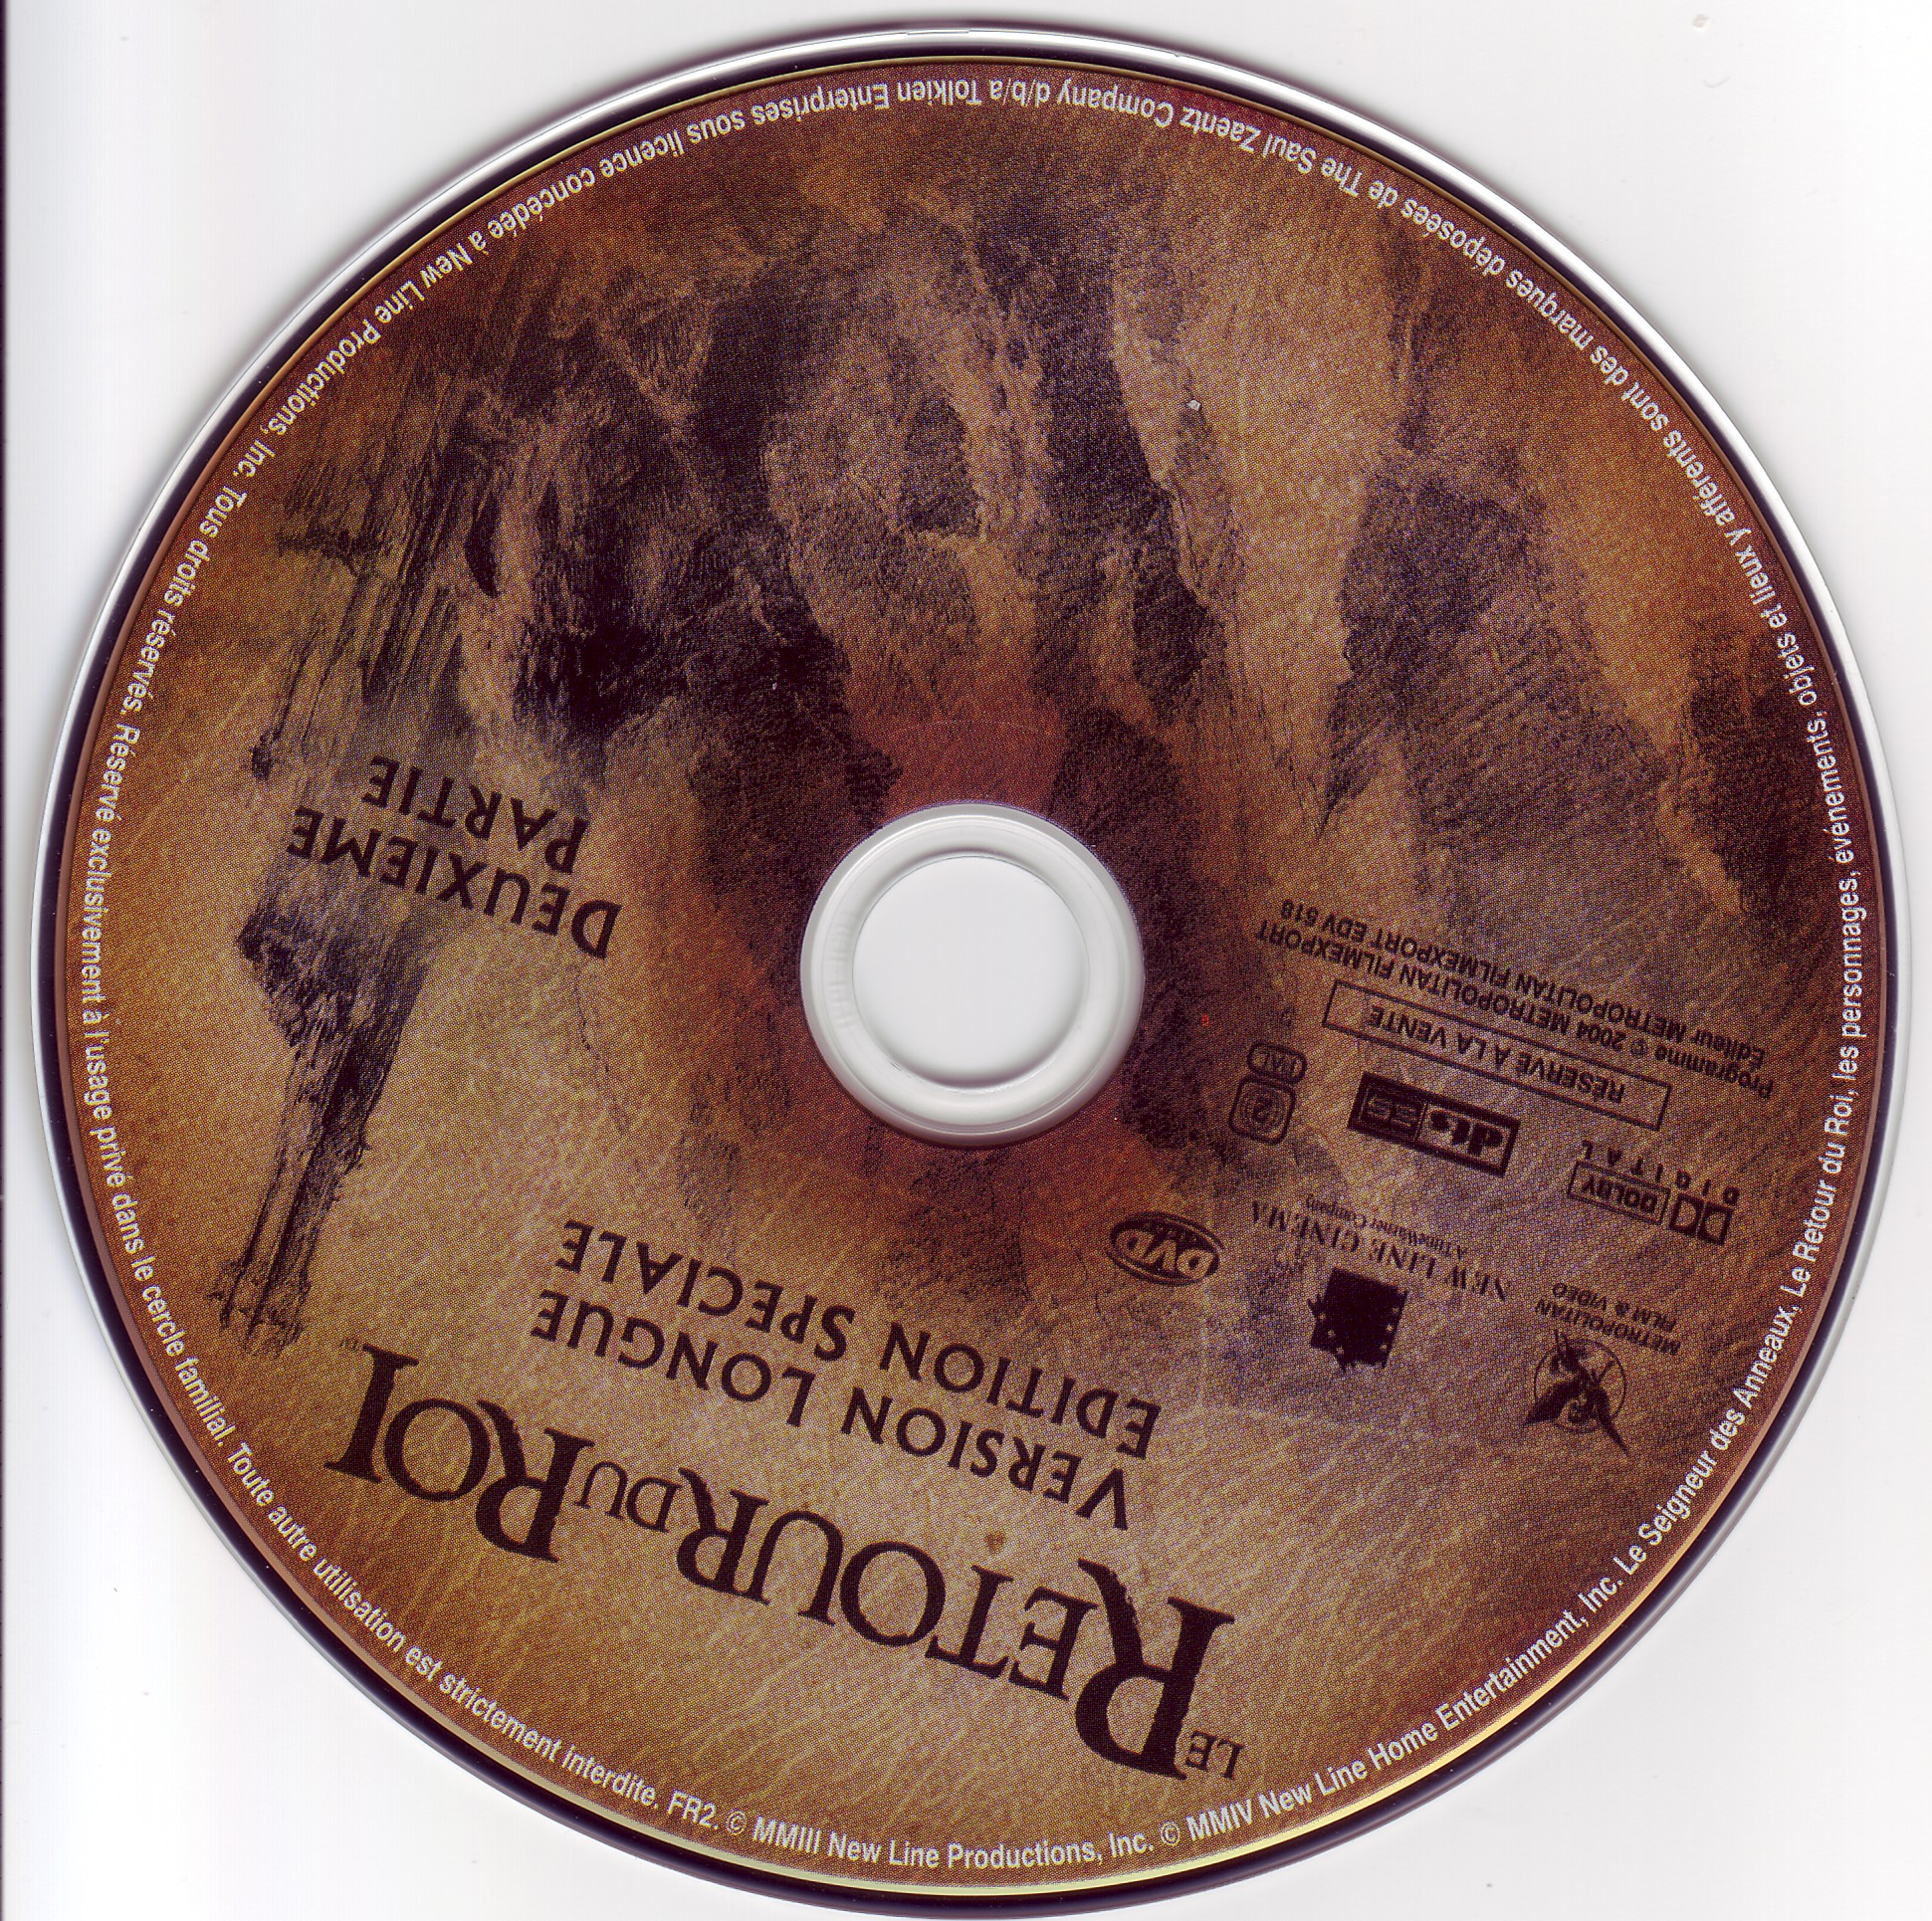 Le seigneur des anneaux le retour du roi version longue (disc 2)